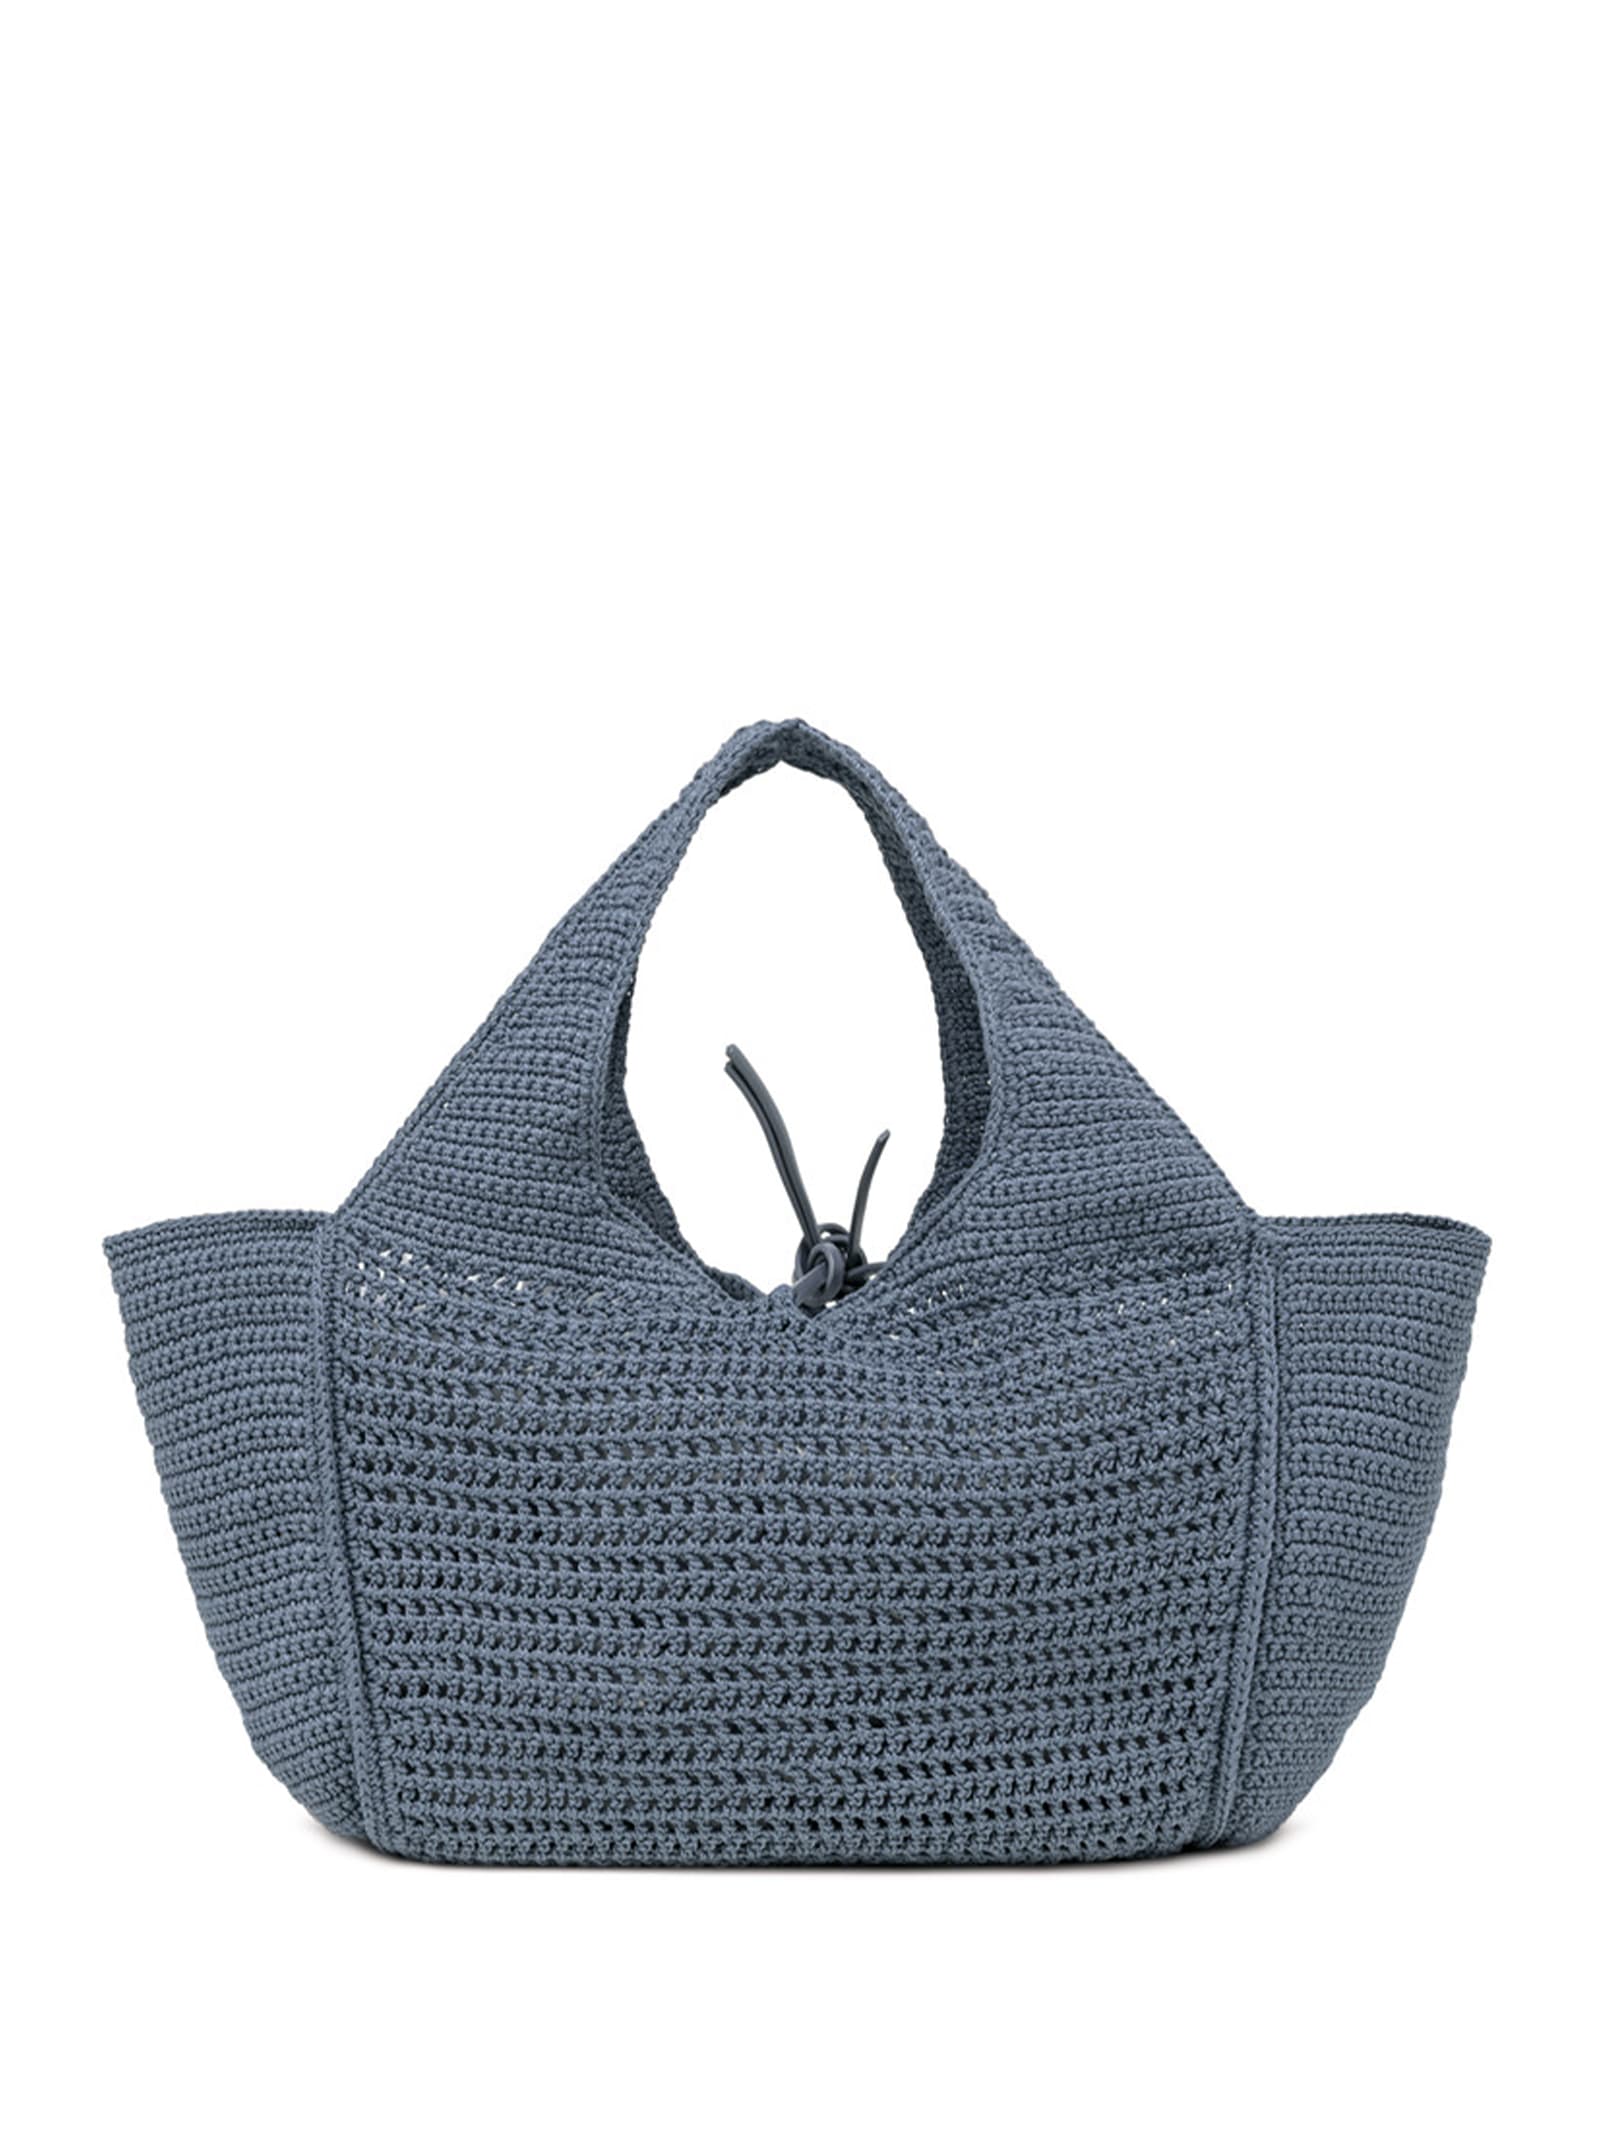 Shop Gianni Chiarini Euforia Bluette Shopping Bag In Crochet Fabric In Artico